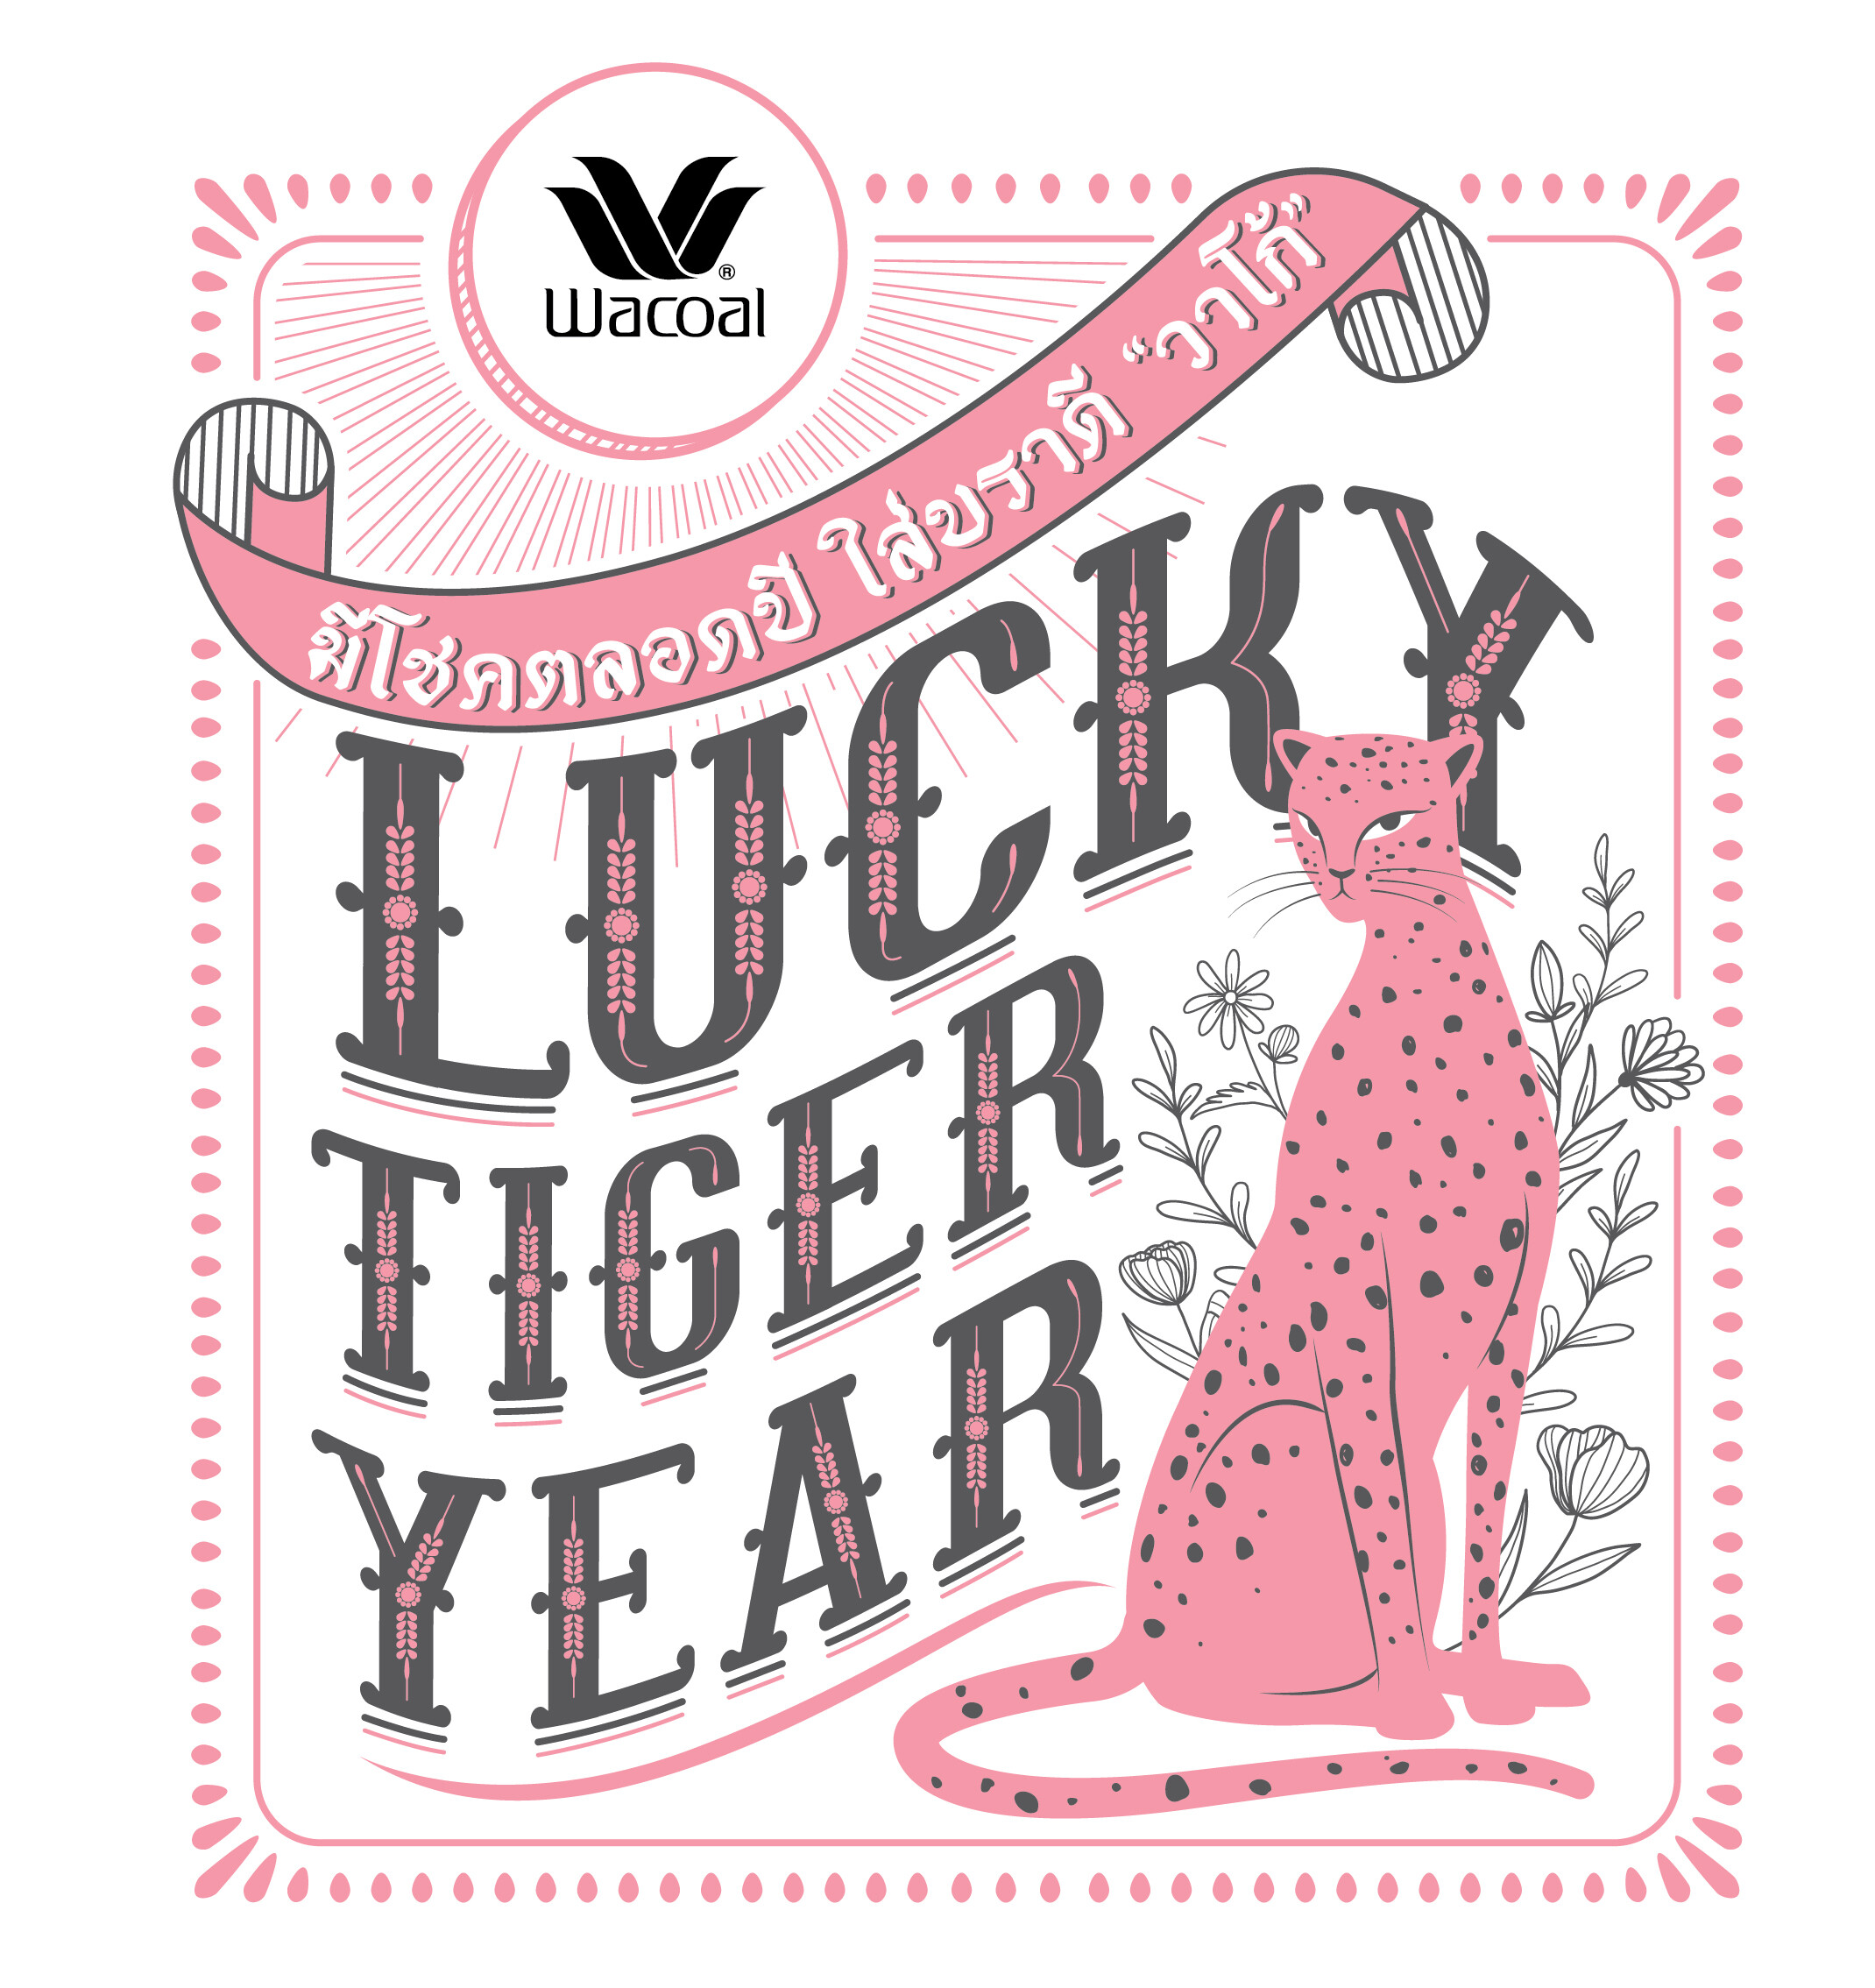 วาโก้ร่วมฉลองปีเสือกับธีม Lucky Tiger Year มีโชคตลอดปี ใส่บราดี "วาโก้" พร้อมพบประสบการณ์ใหม่ในการช้อป ตลอดปี 2022